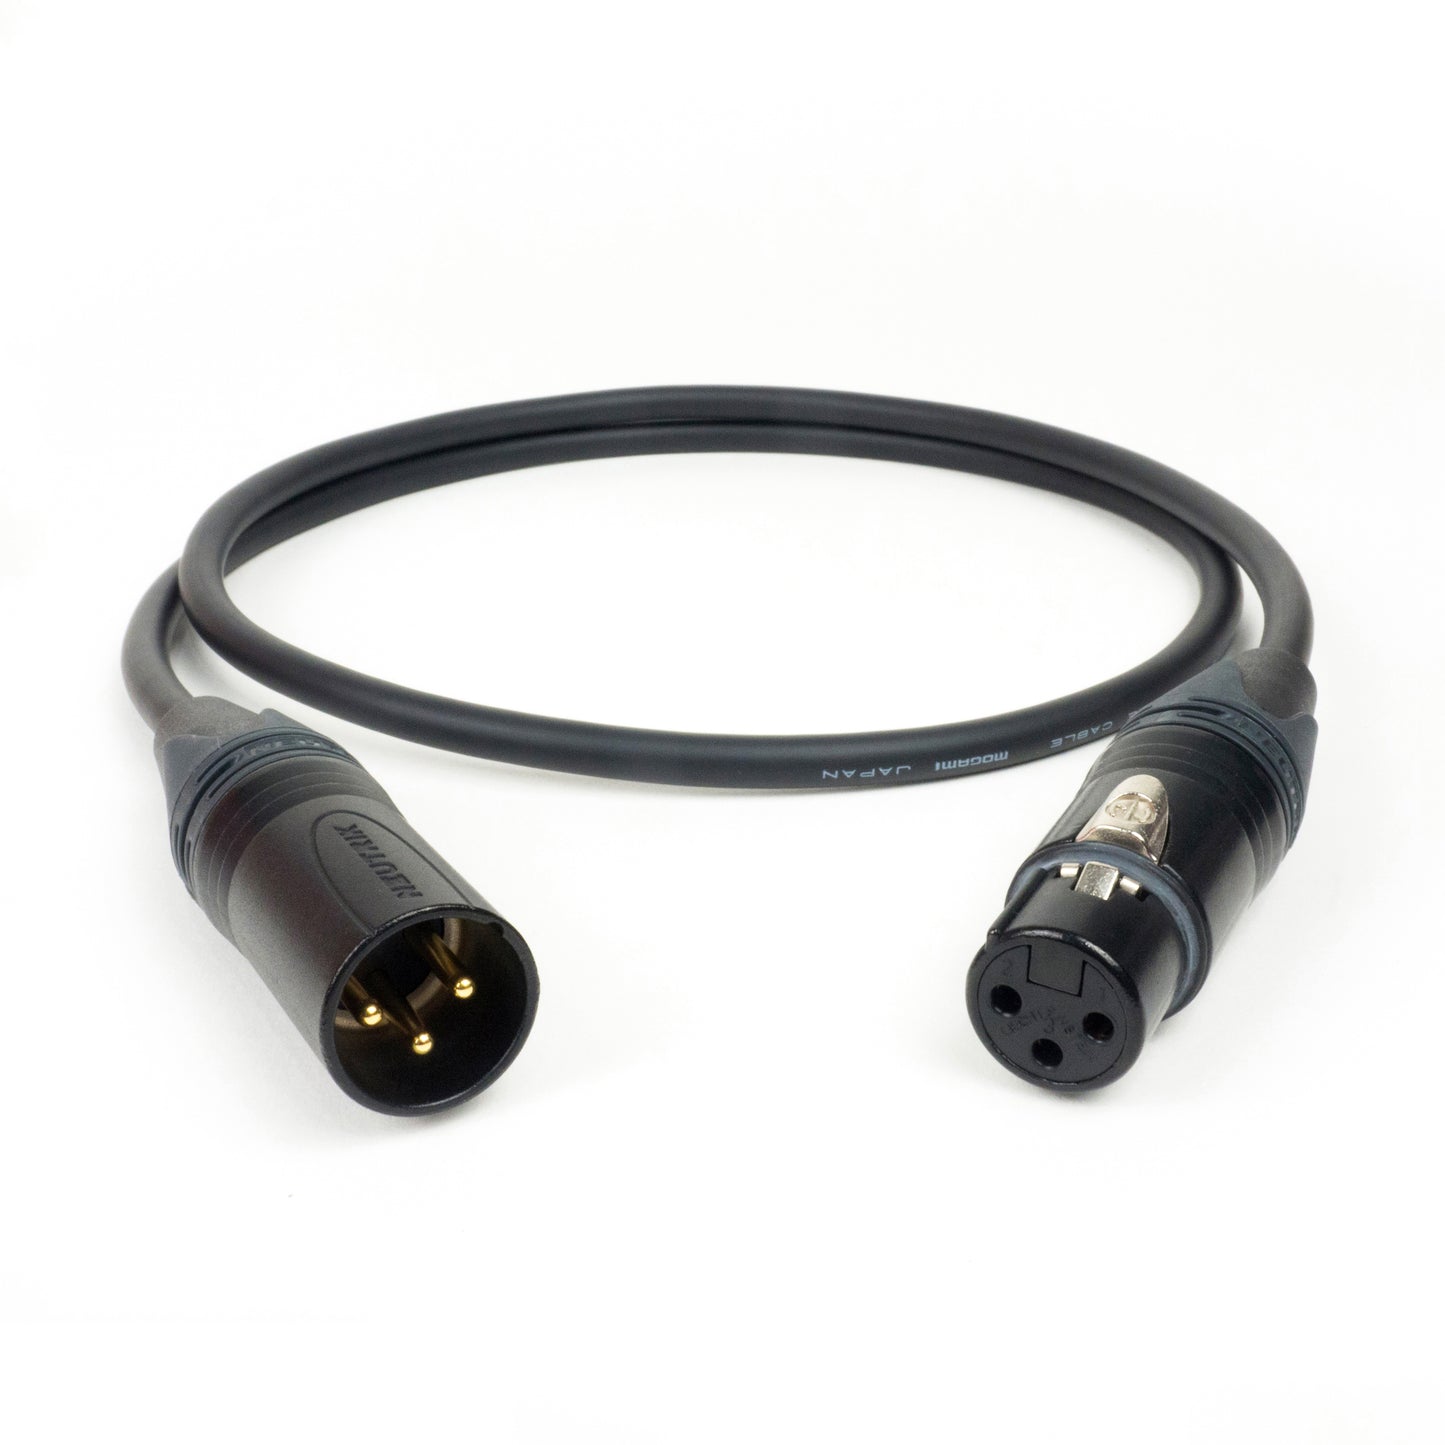 Mogami 2534 Quad Balanced Cable w/ Gold Neutrik XLR Connectors